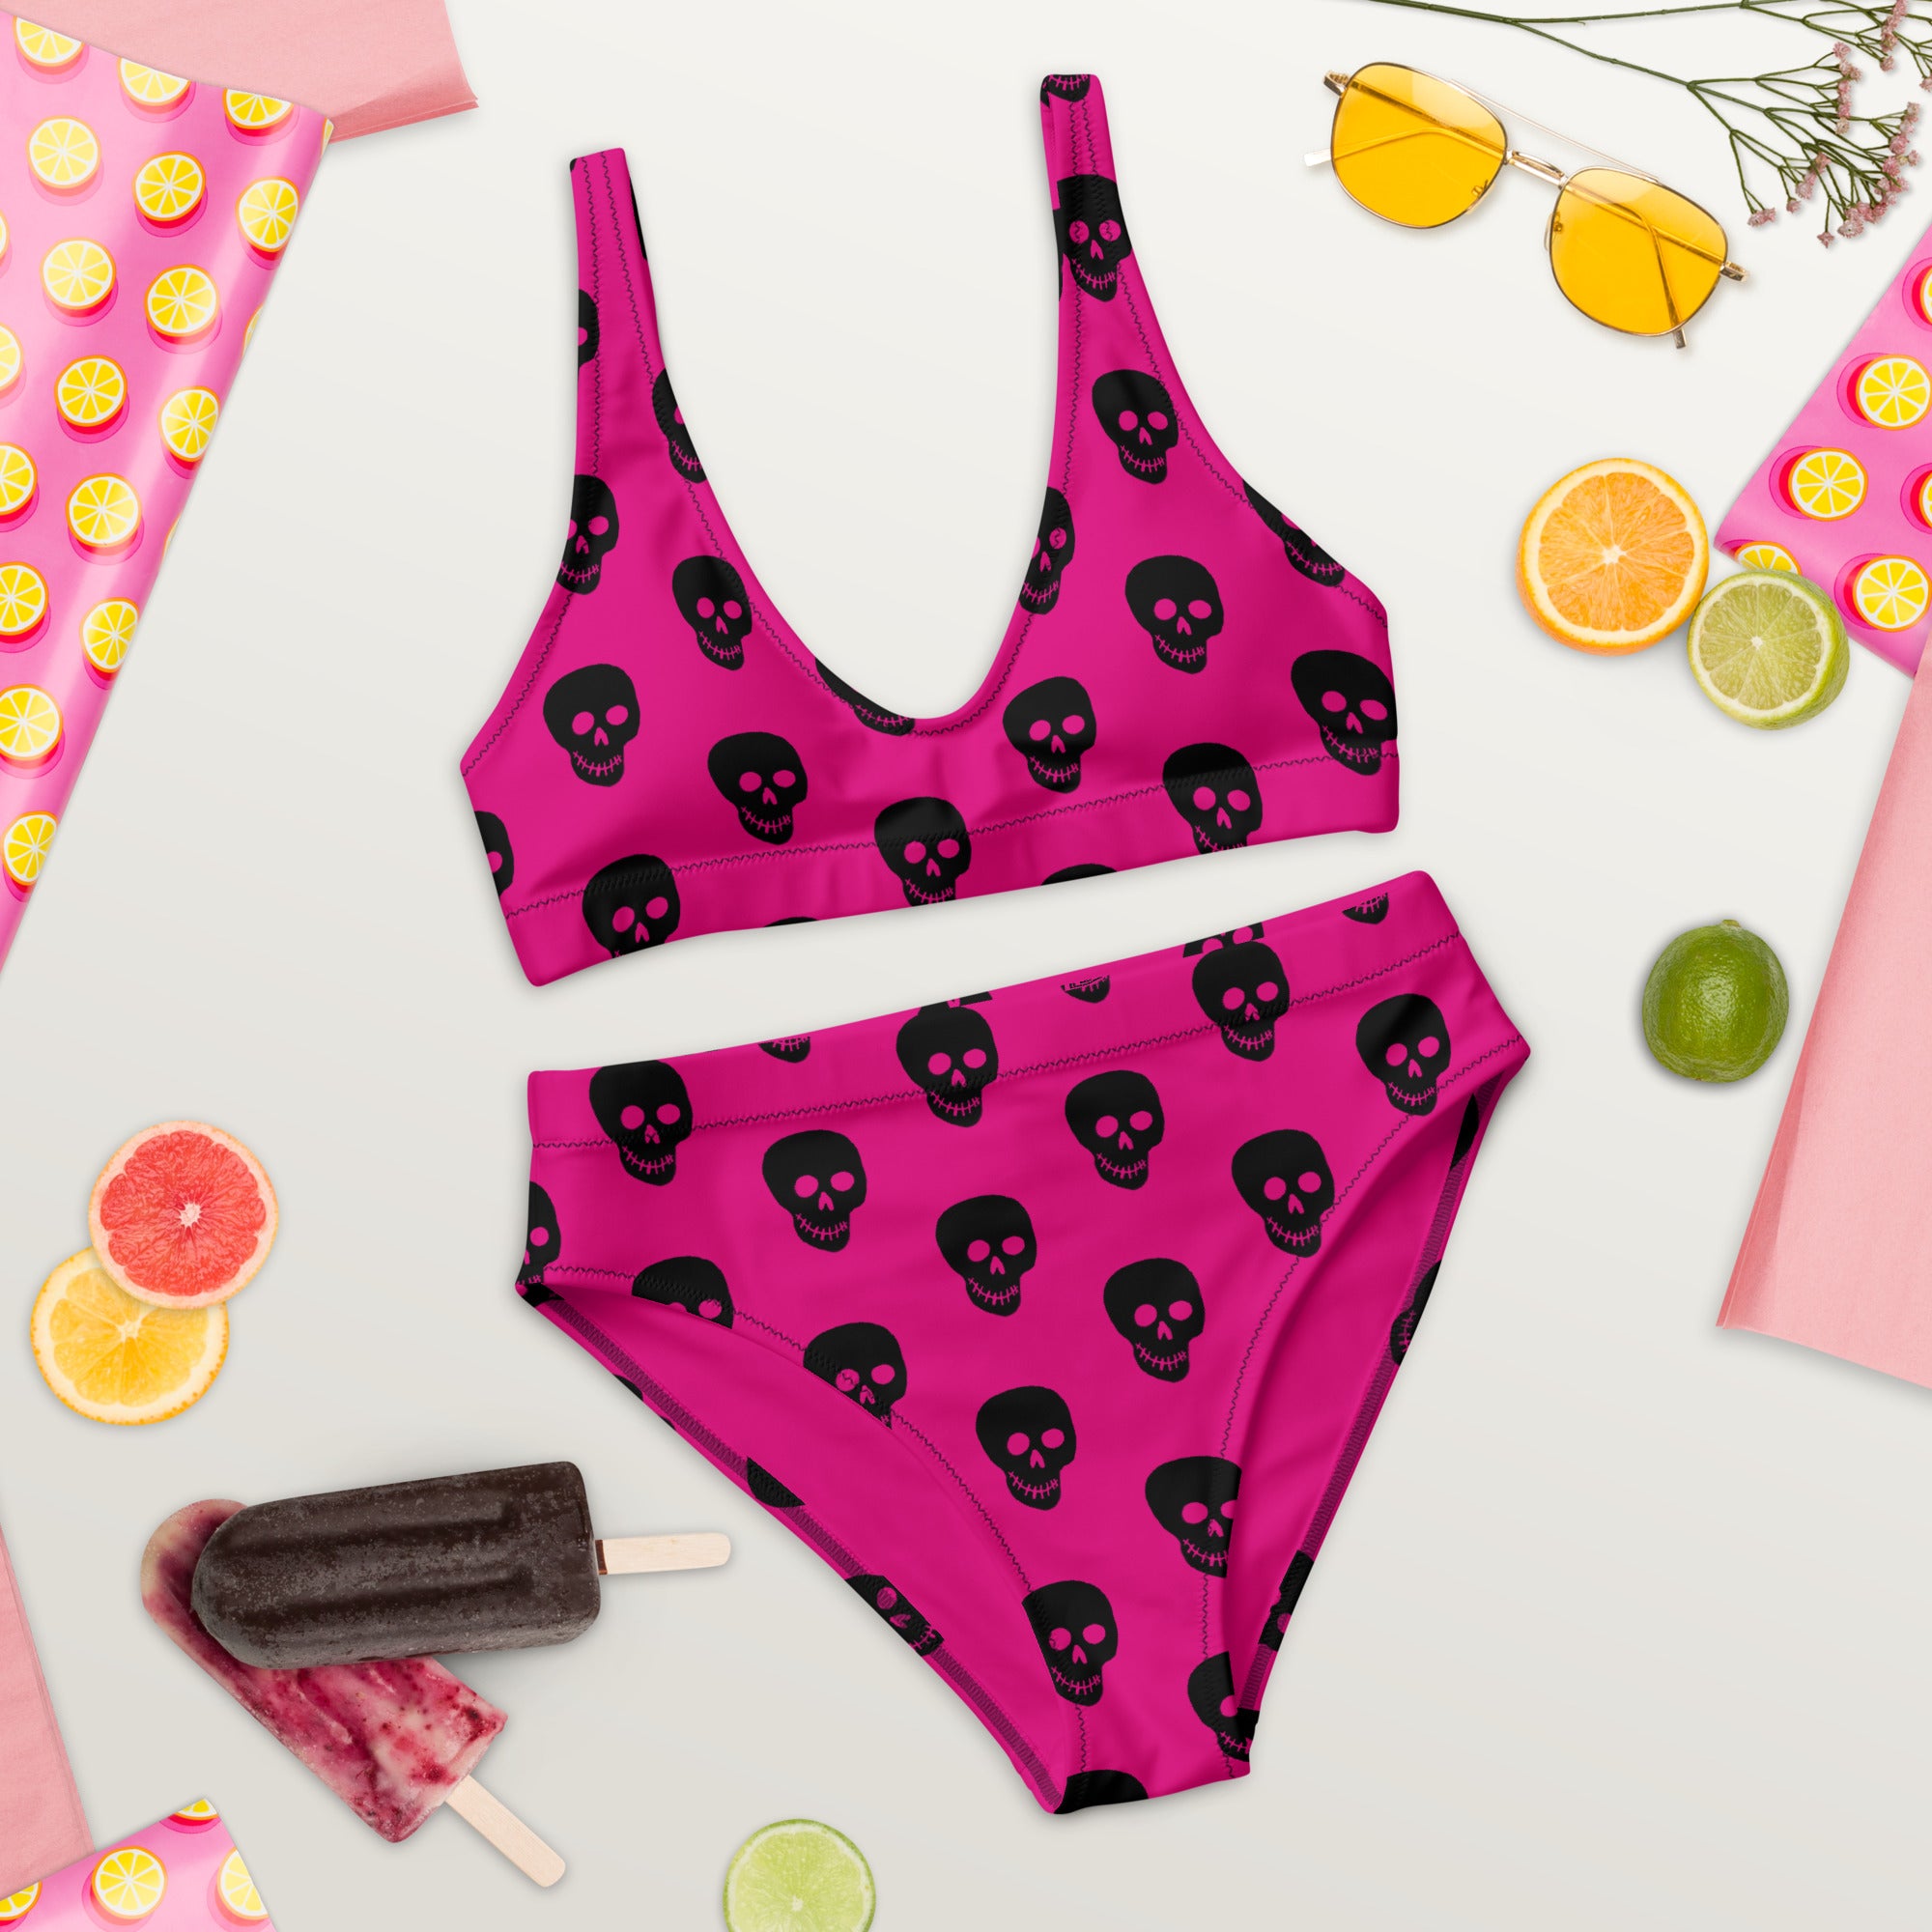 Pink Black Skull Recycled high-waisted bikini